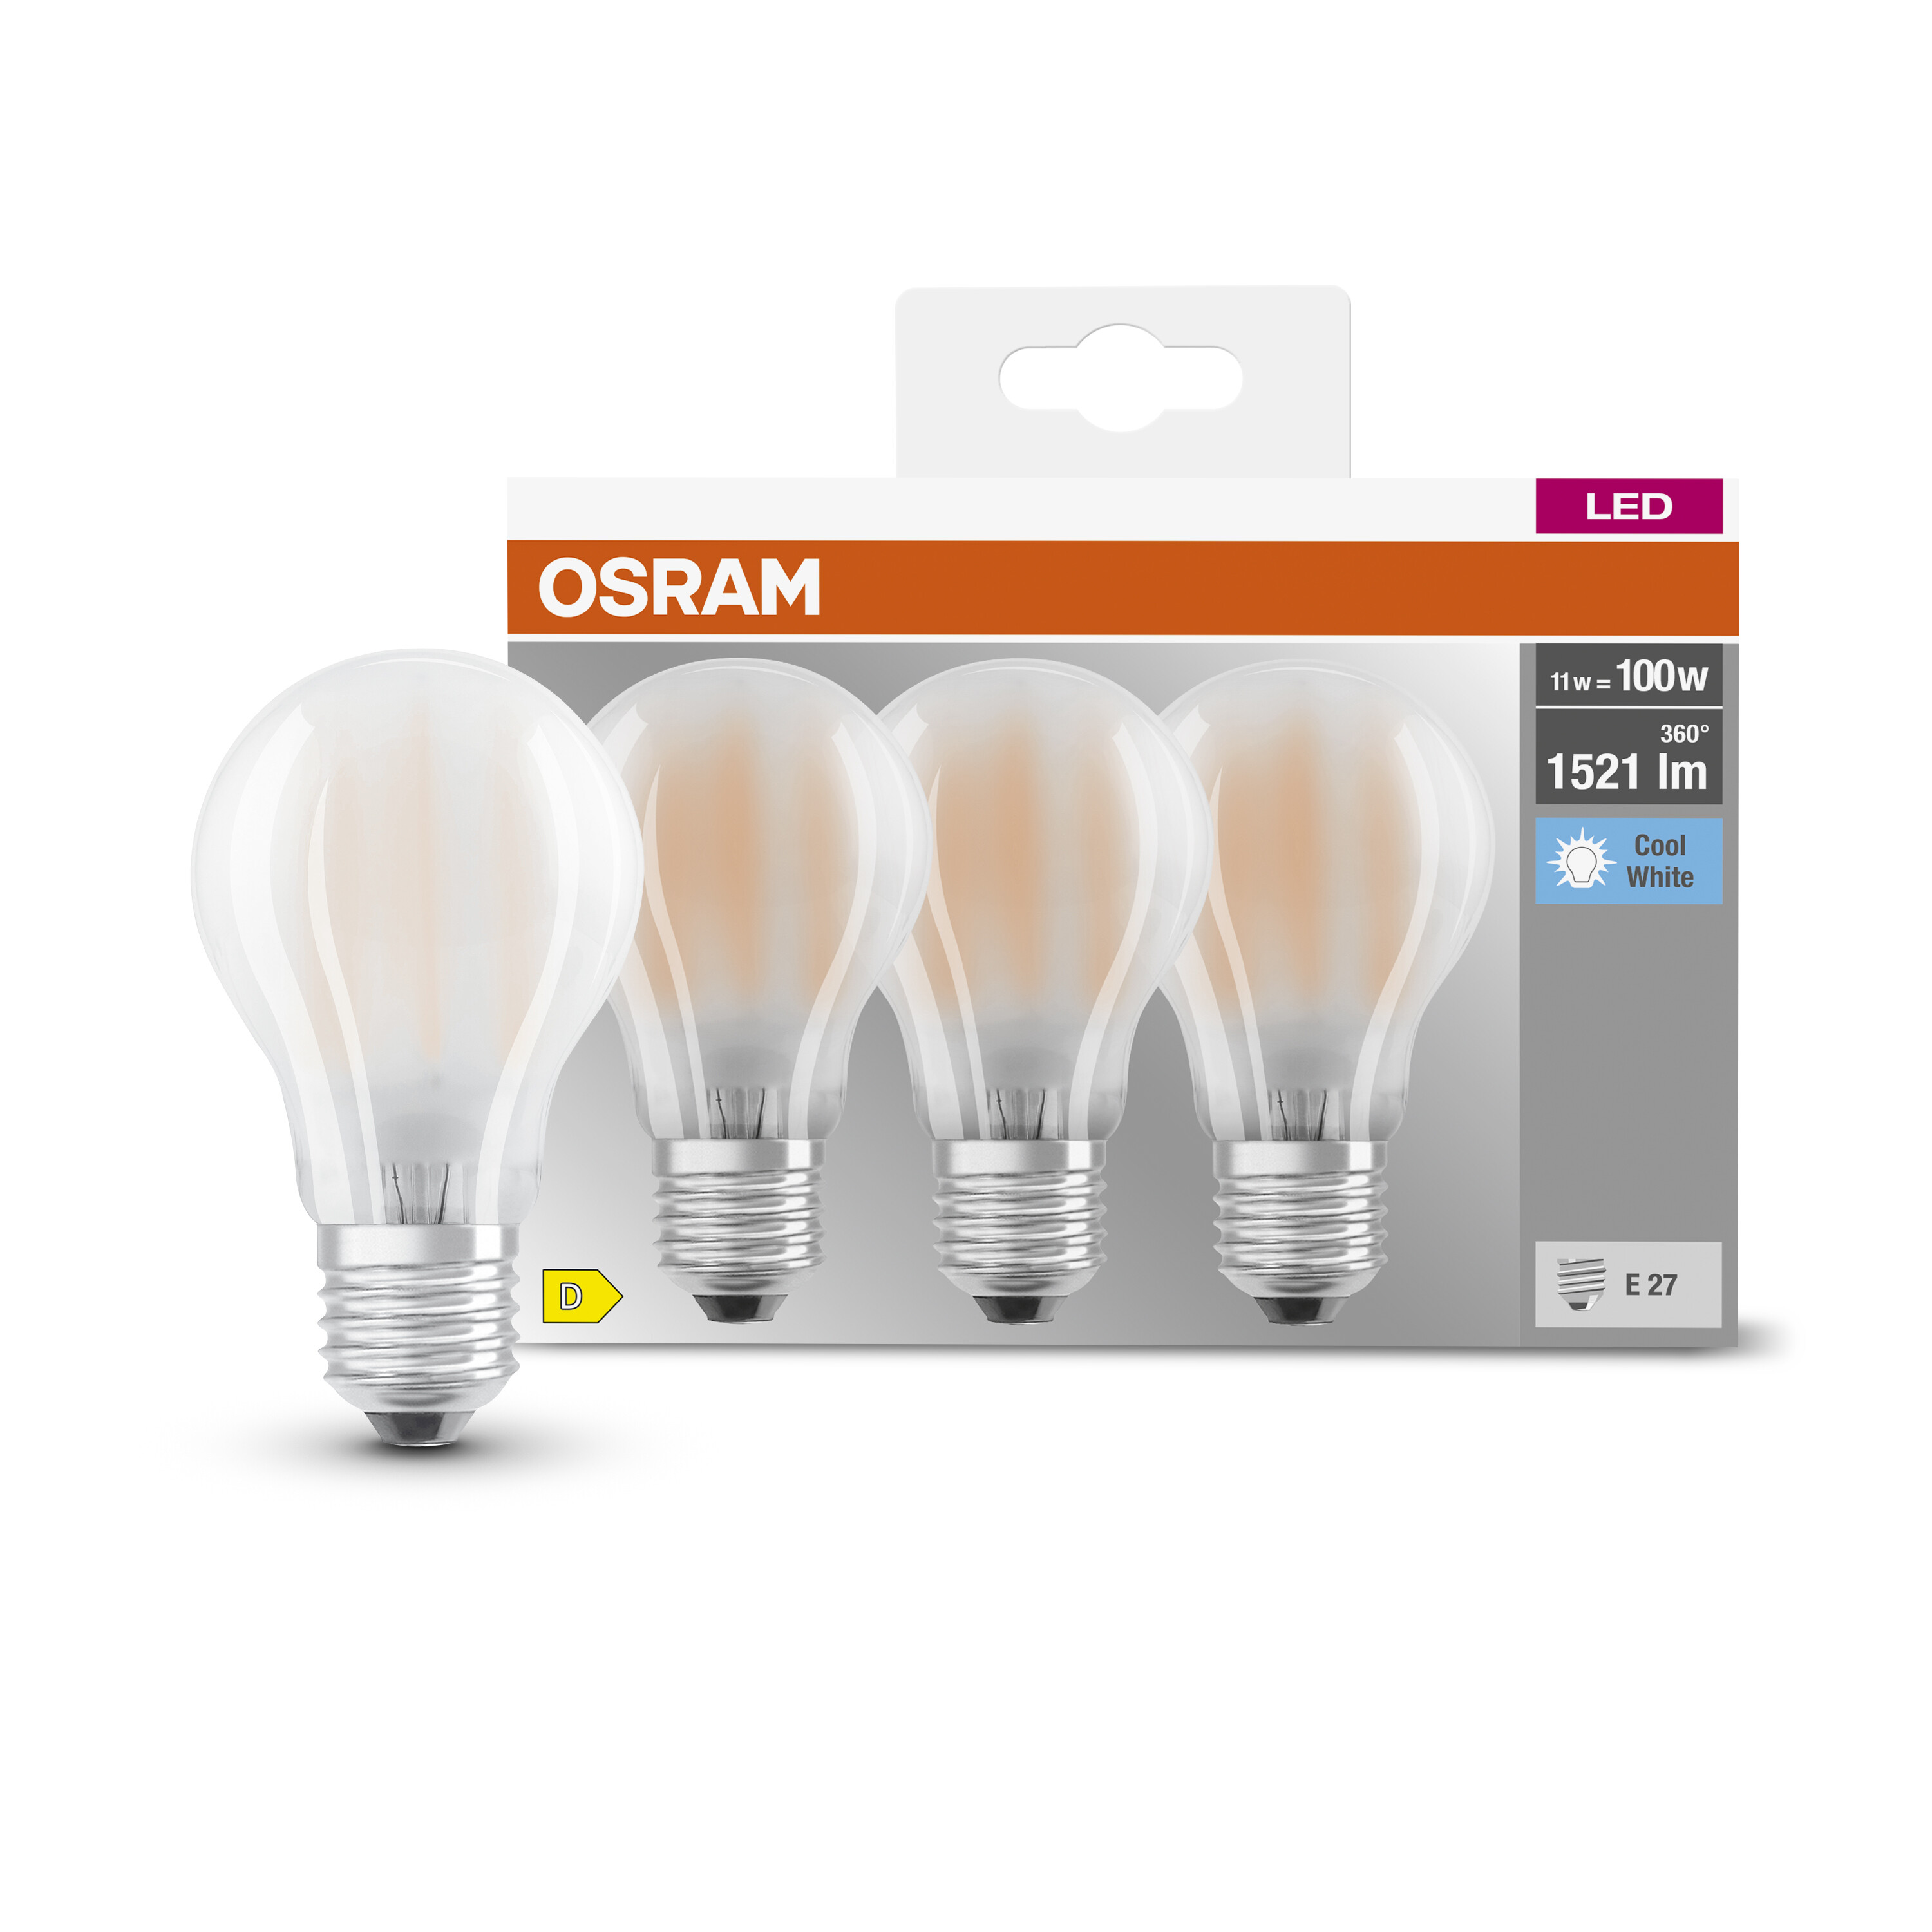 OSRAM  LED BASE CLASSIC A LED Kaltweiß Lampe lumen 1521